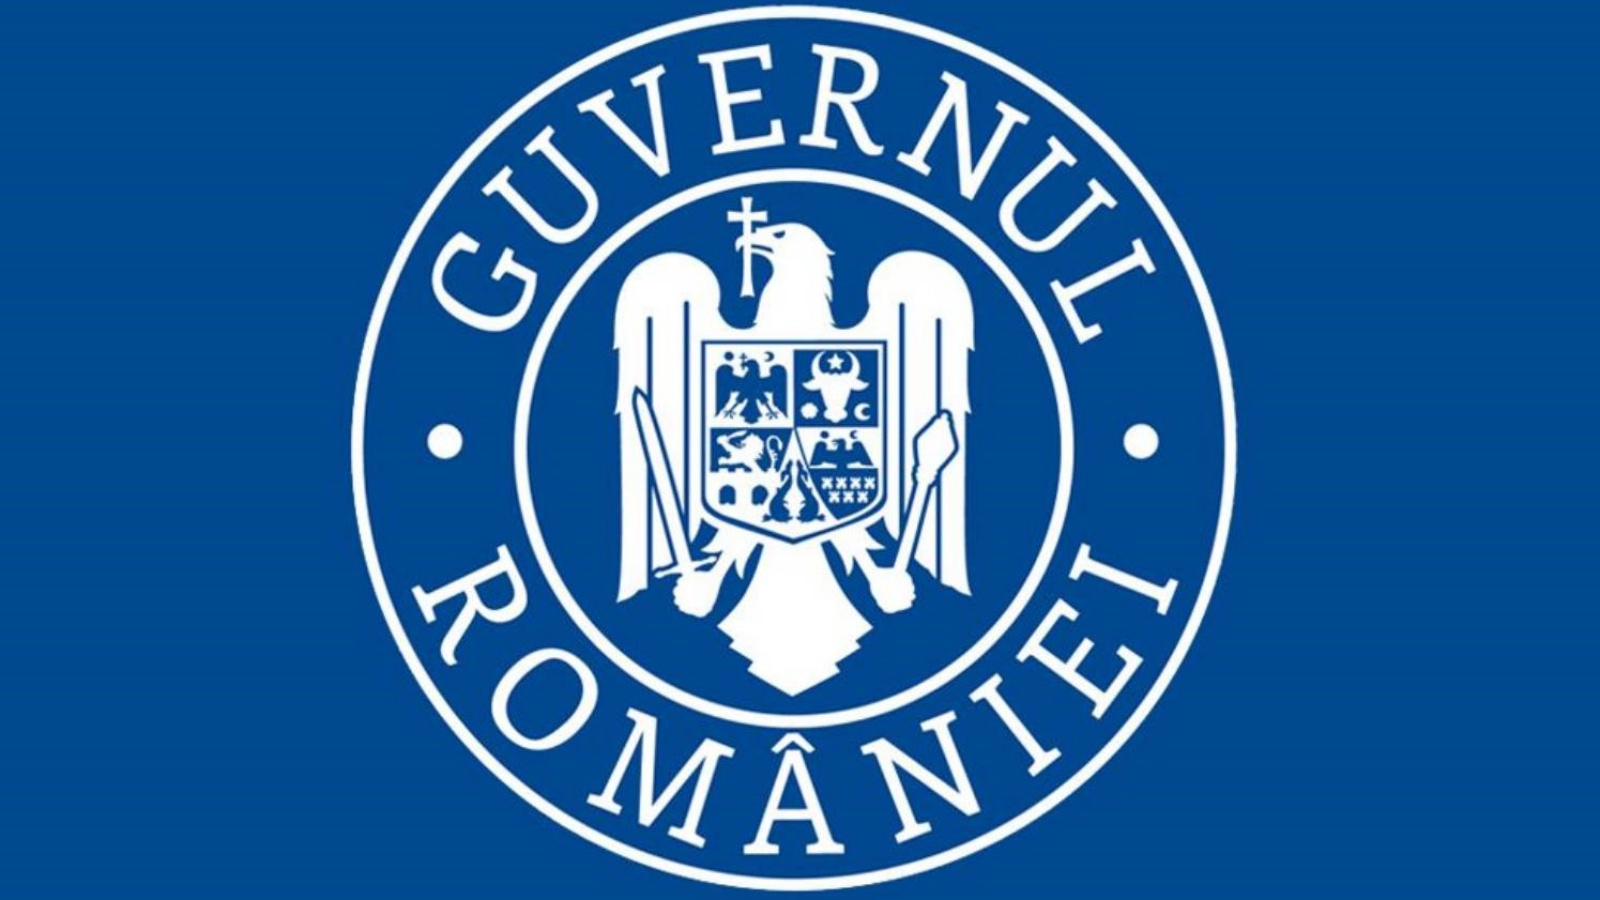 De Roemeense regering trekt het covid-certificaat voor grensoverschrijding in twijfel